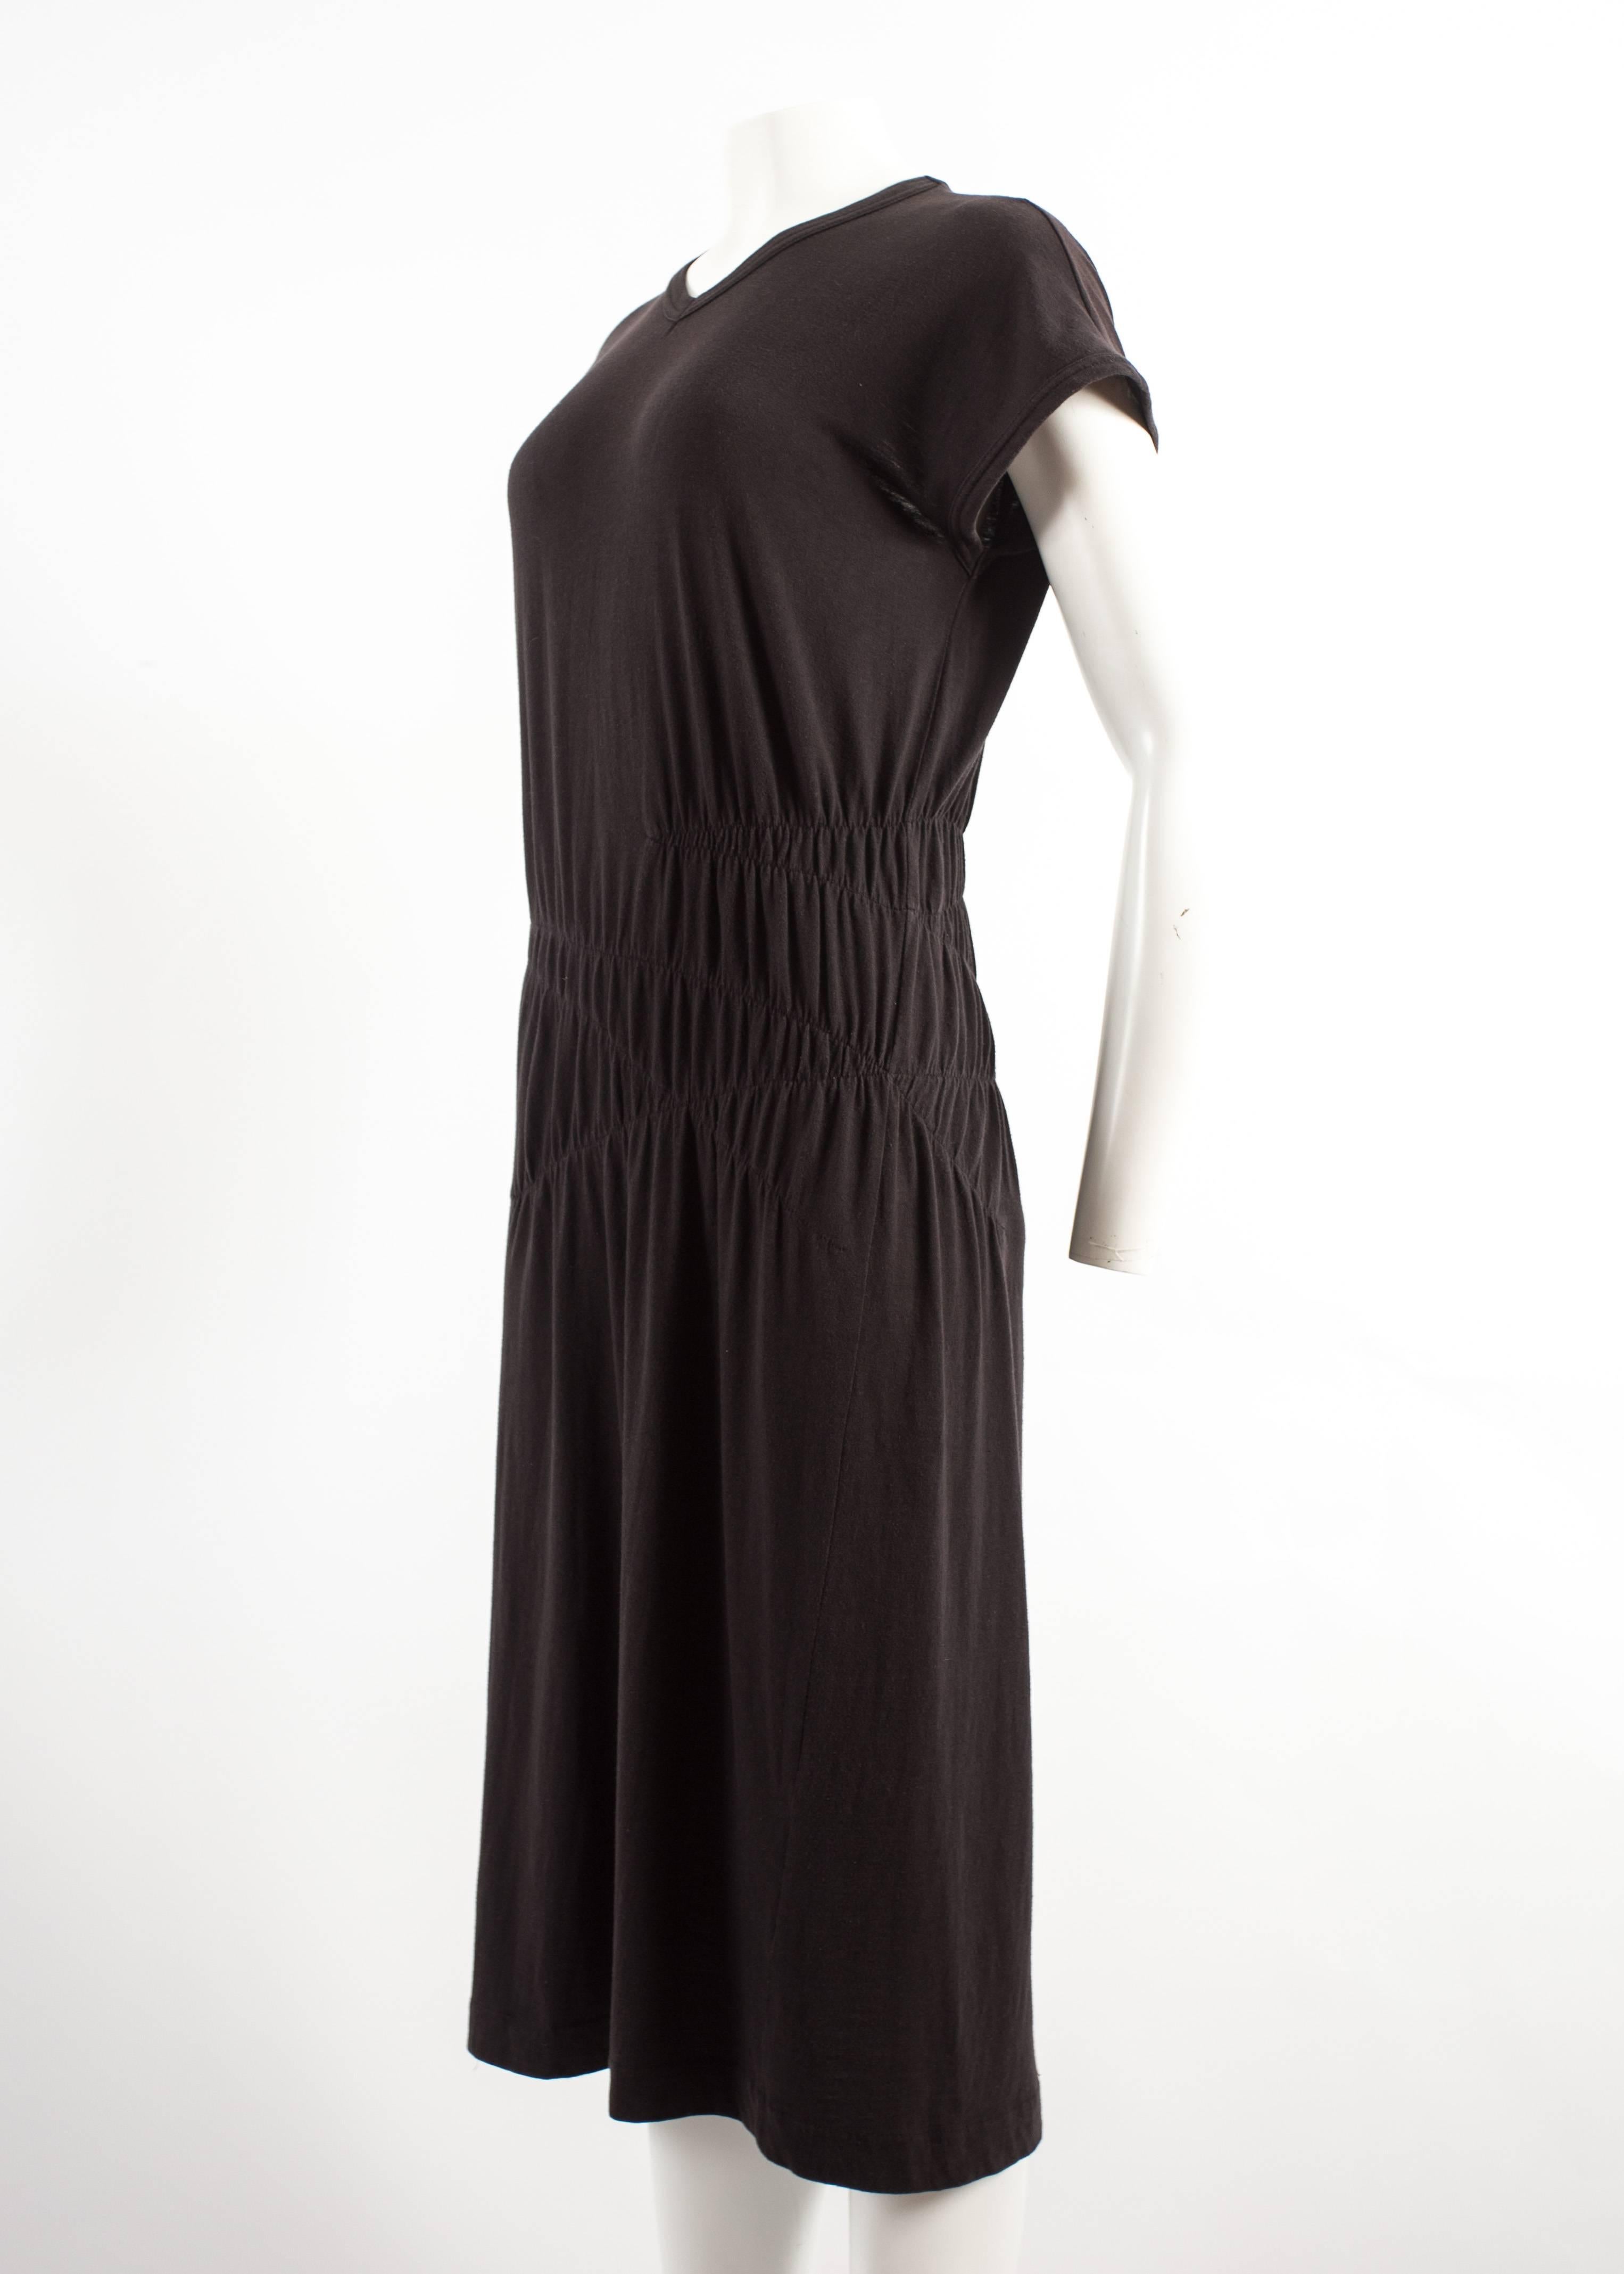 Comme des Garcons 1983-84 black cotton smocked dress For Sale at ...